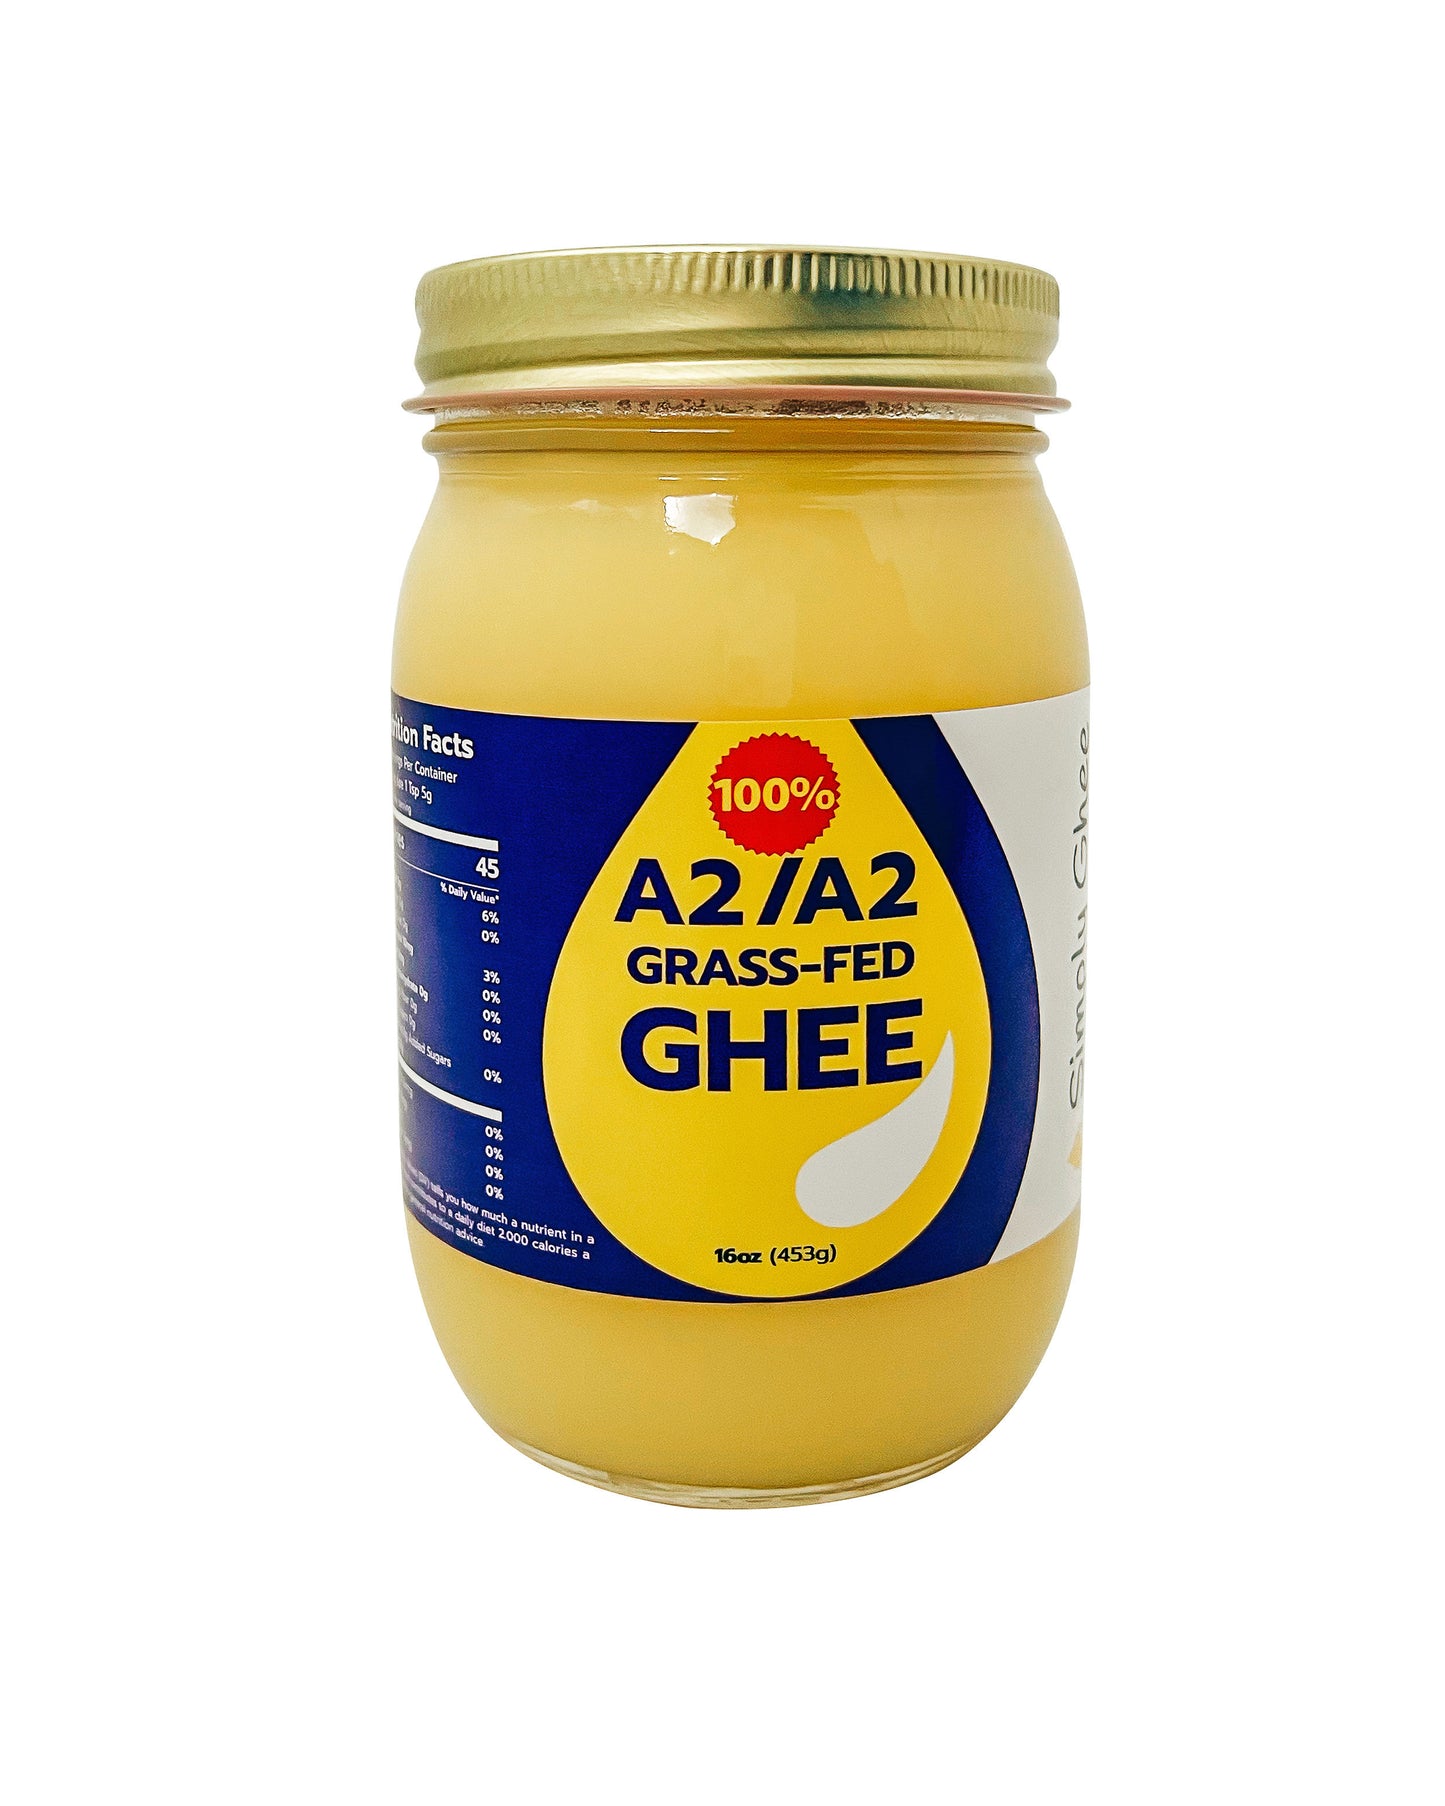 A2/A2 Grassfed Non-GMO Ghee 16oz - Case of 12